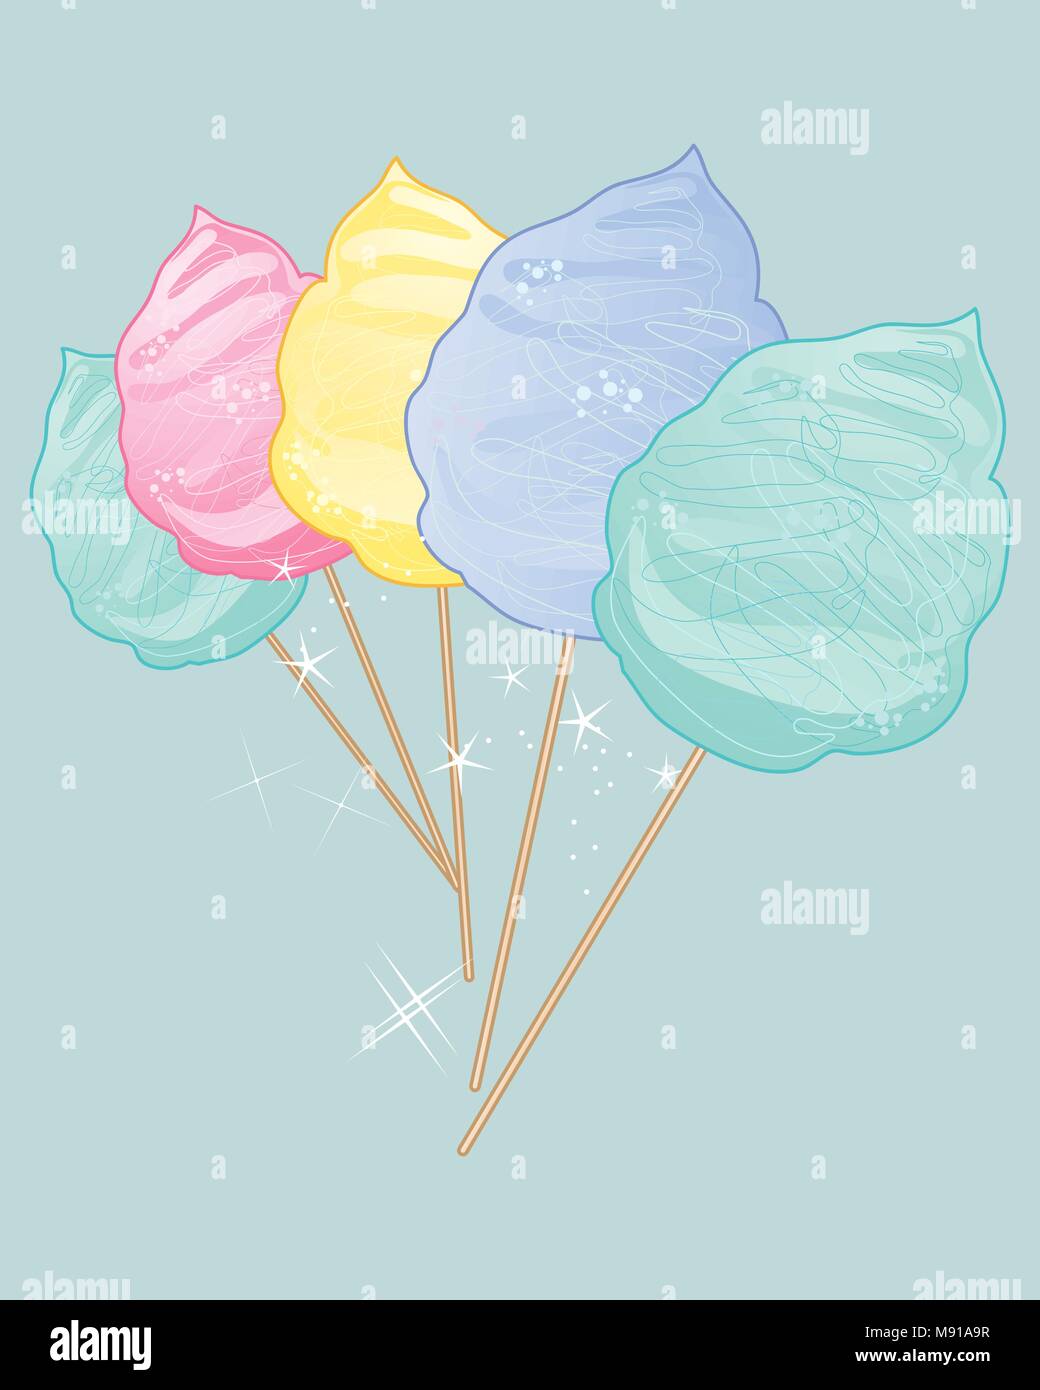 Un vecteur illustration en format eps 10 de délicieux bonbons coton vintage en couleurs sur un fond de jade Illustration de Vecteur